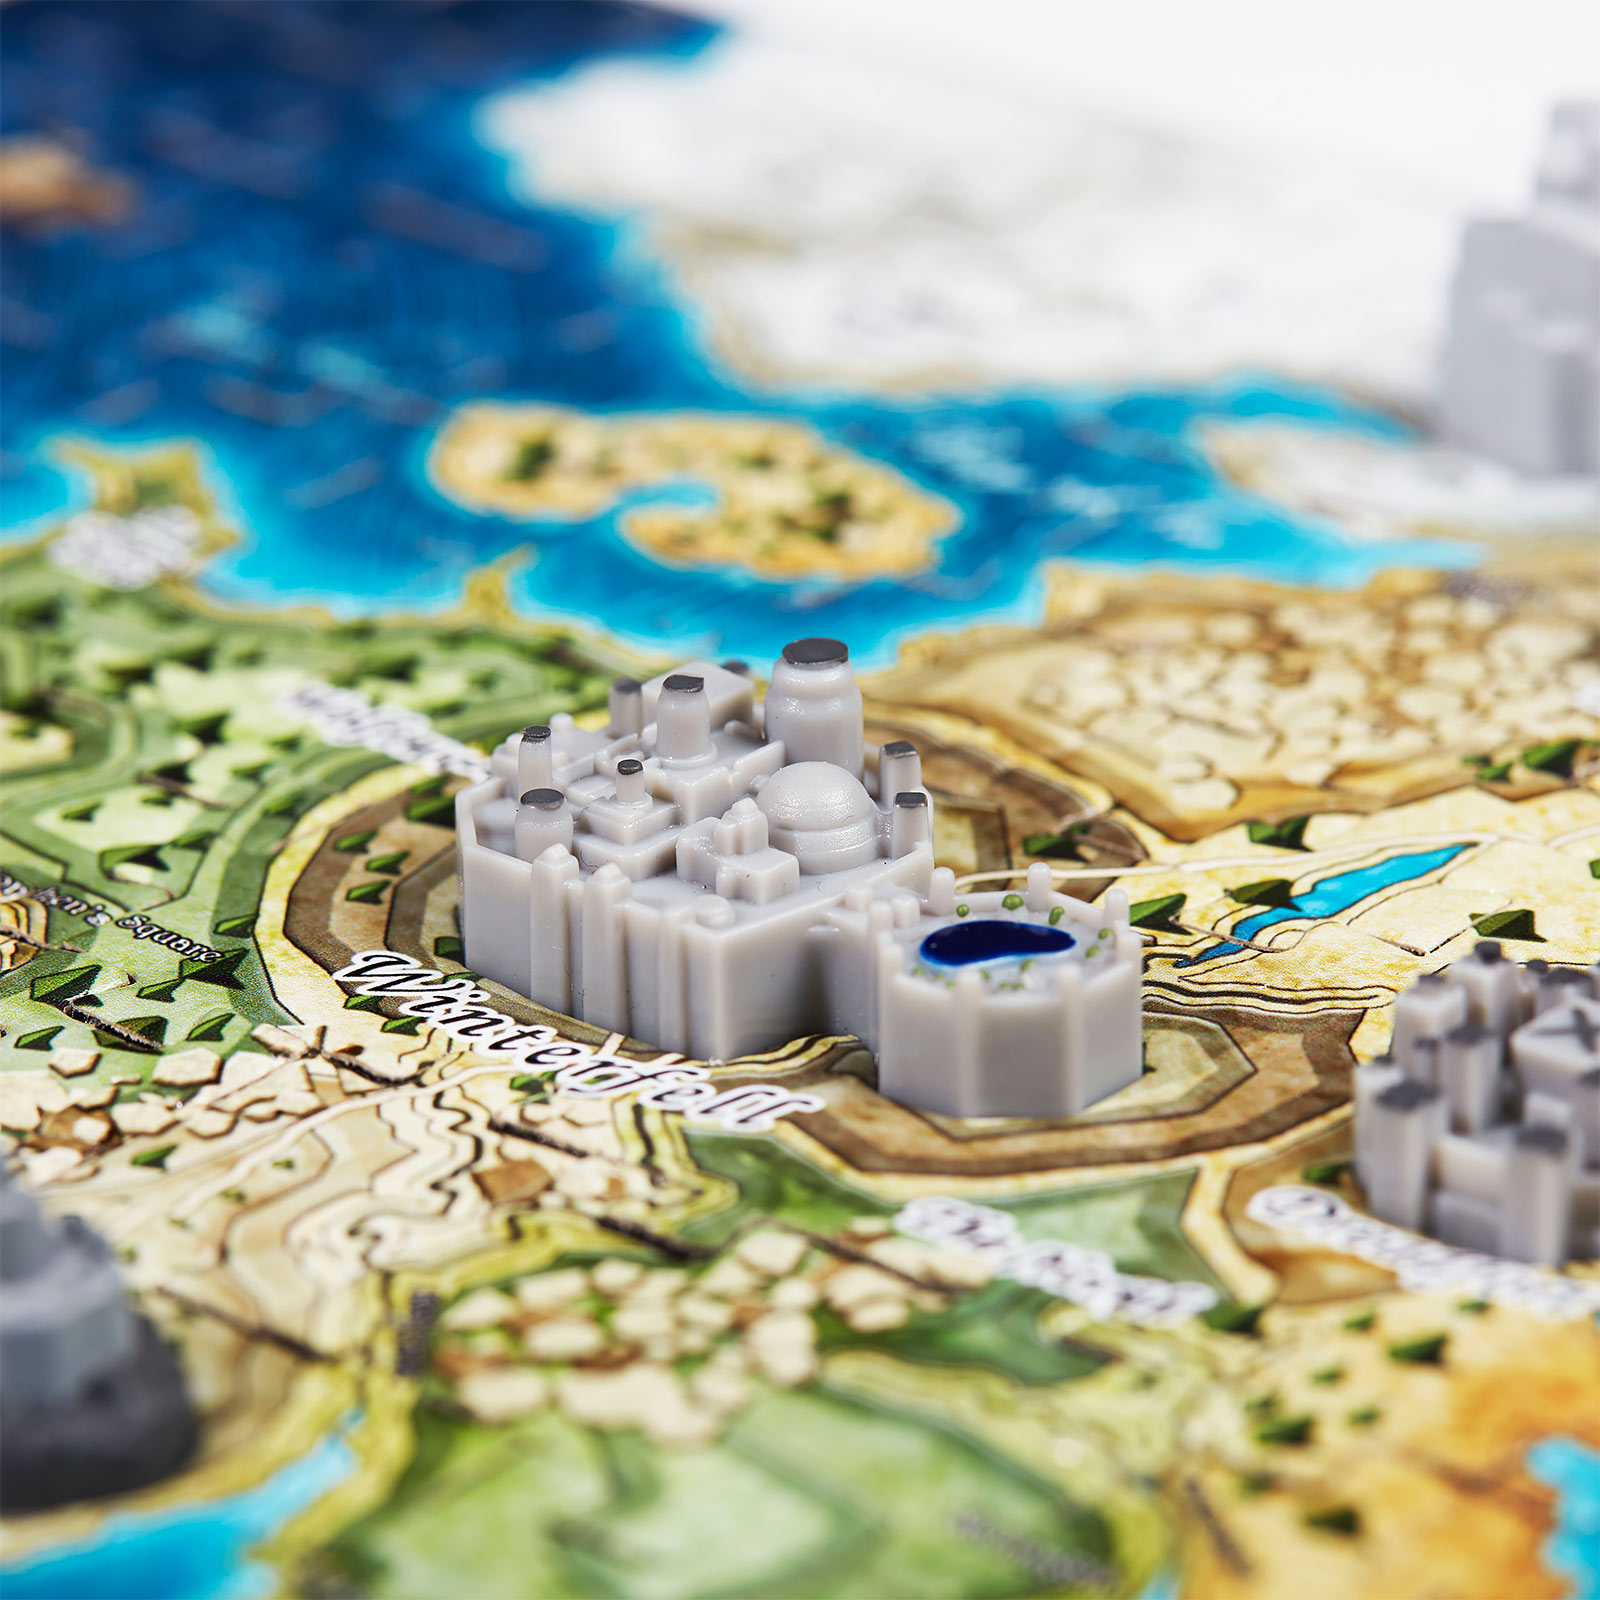 Game of Thrones - Westeros Mini Puzzle 3D